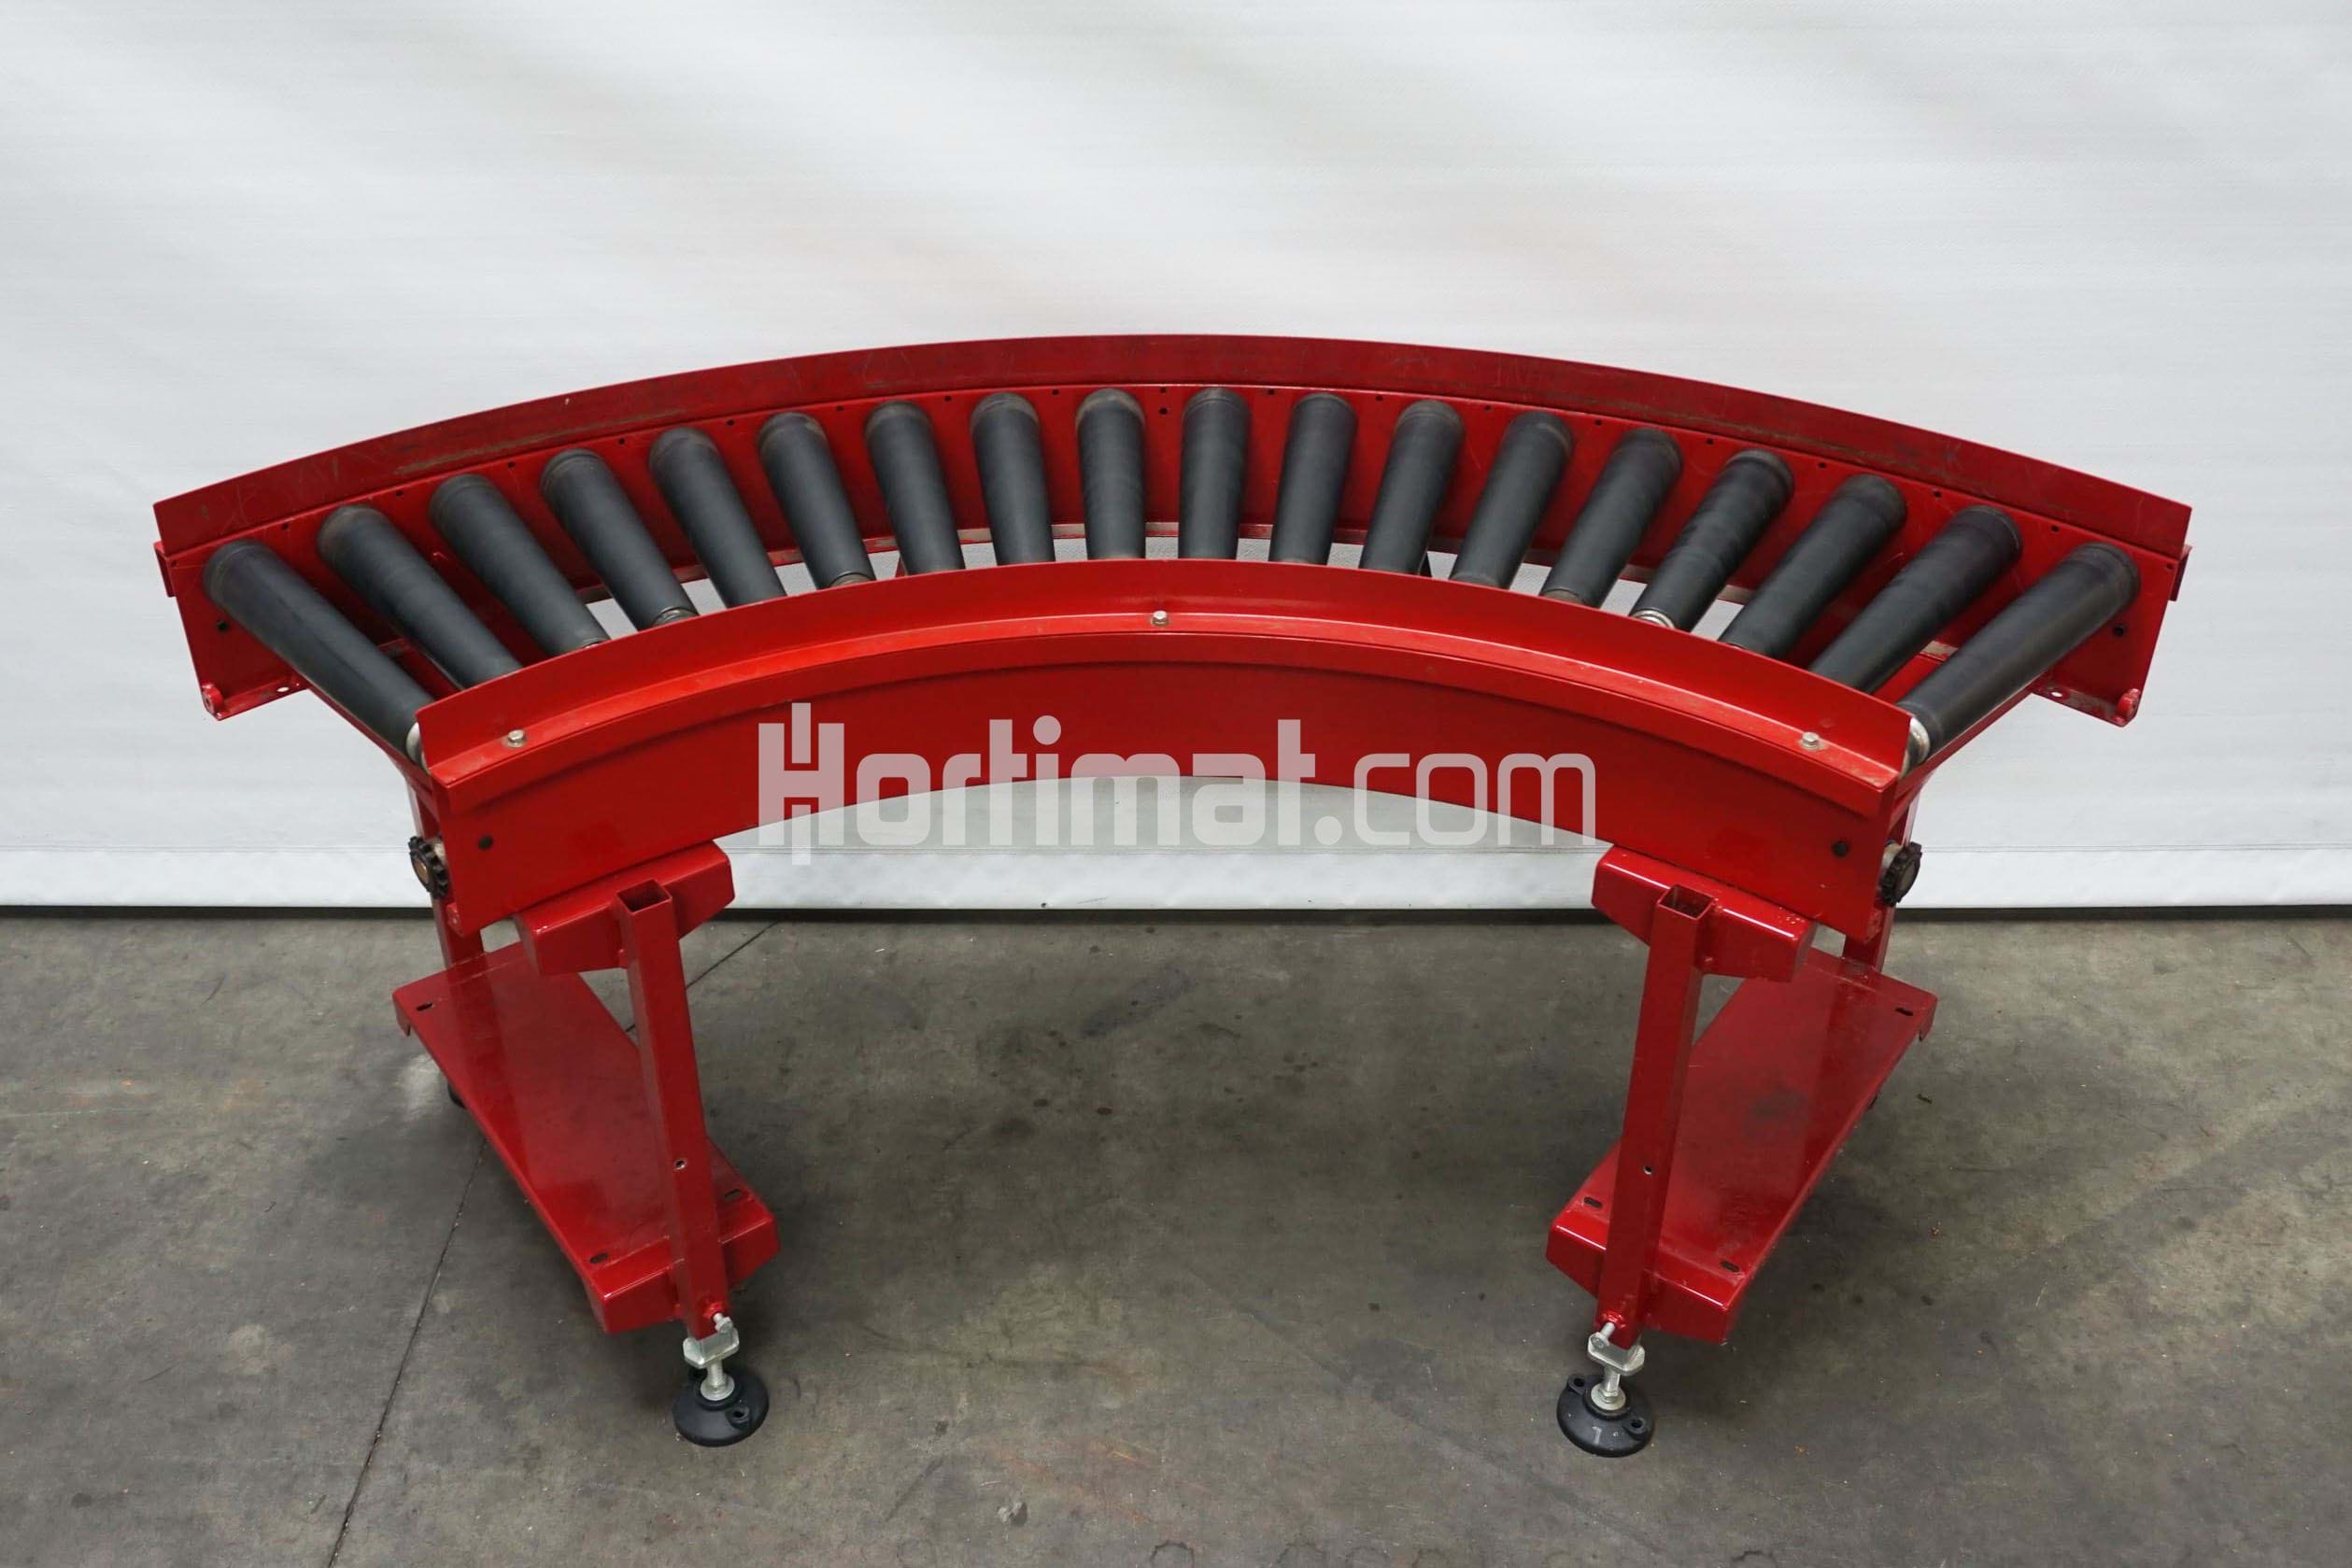 Driven roller conveyor 90 degrees (Taks, 490 mm) - Hortimat